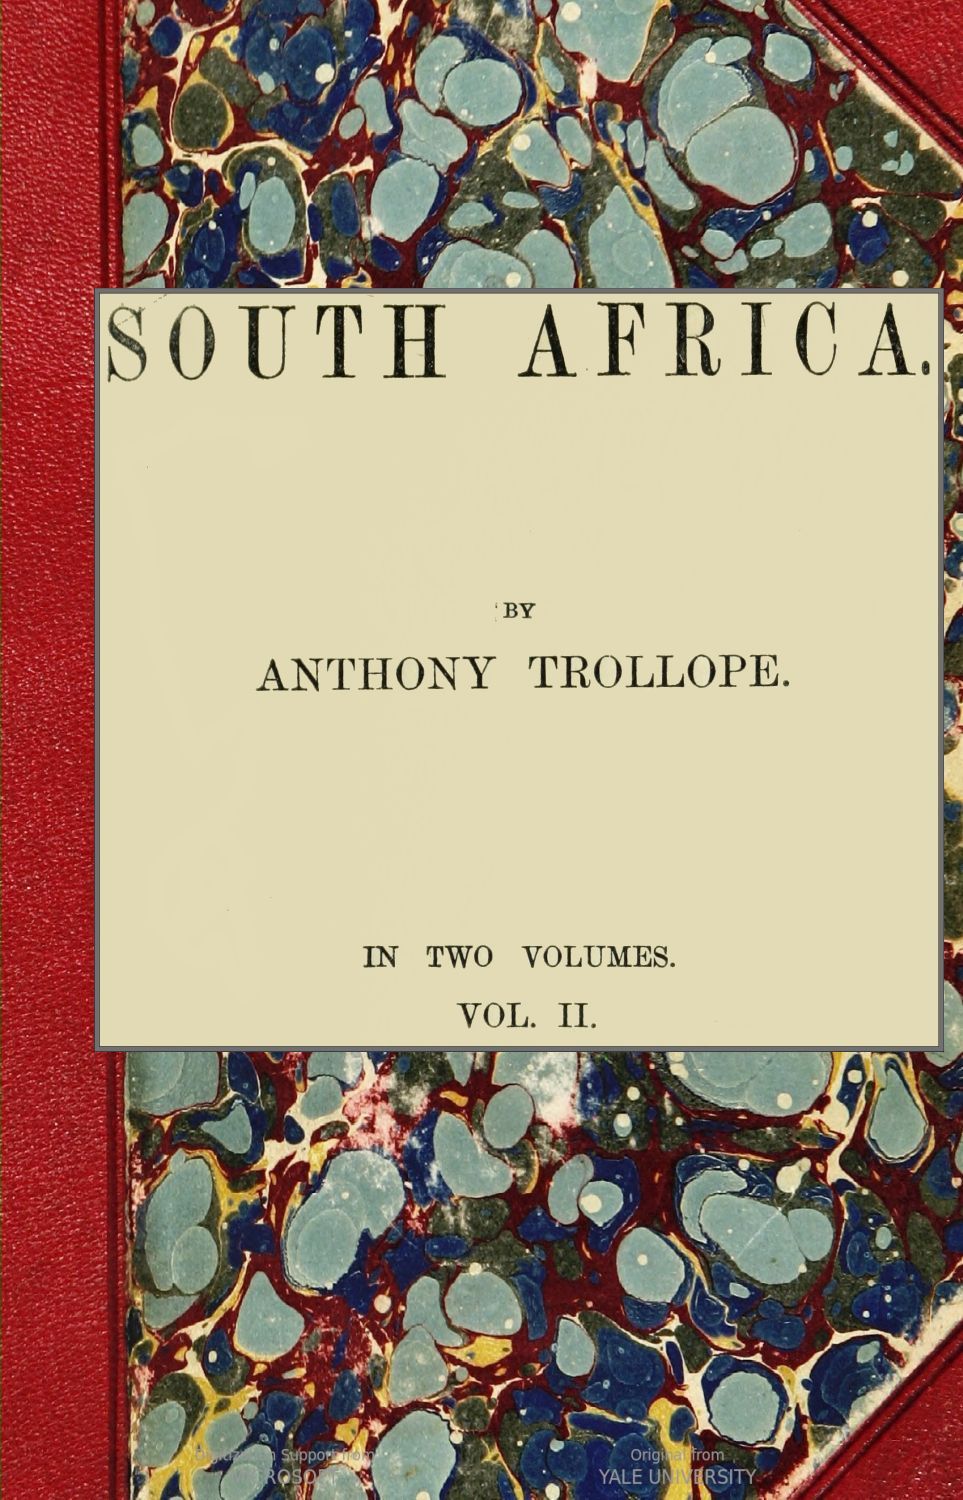 South Africa, vol. II.